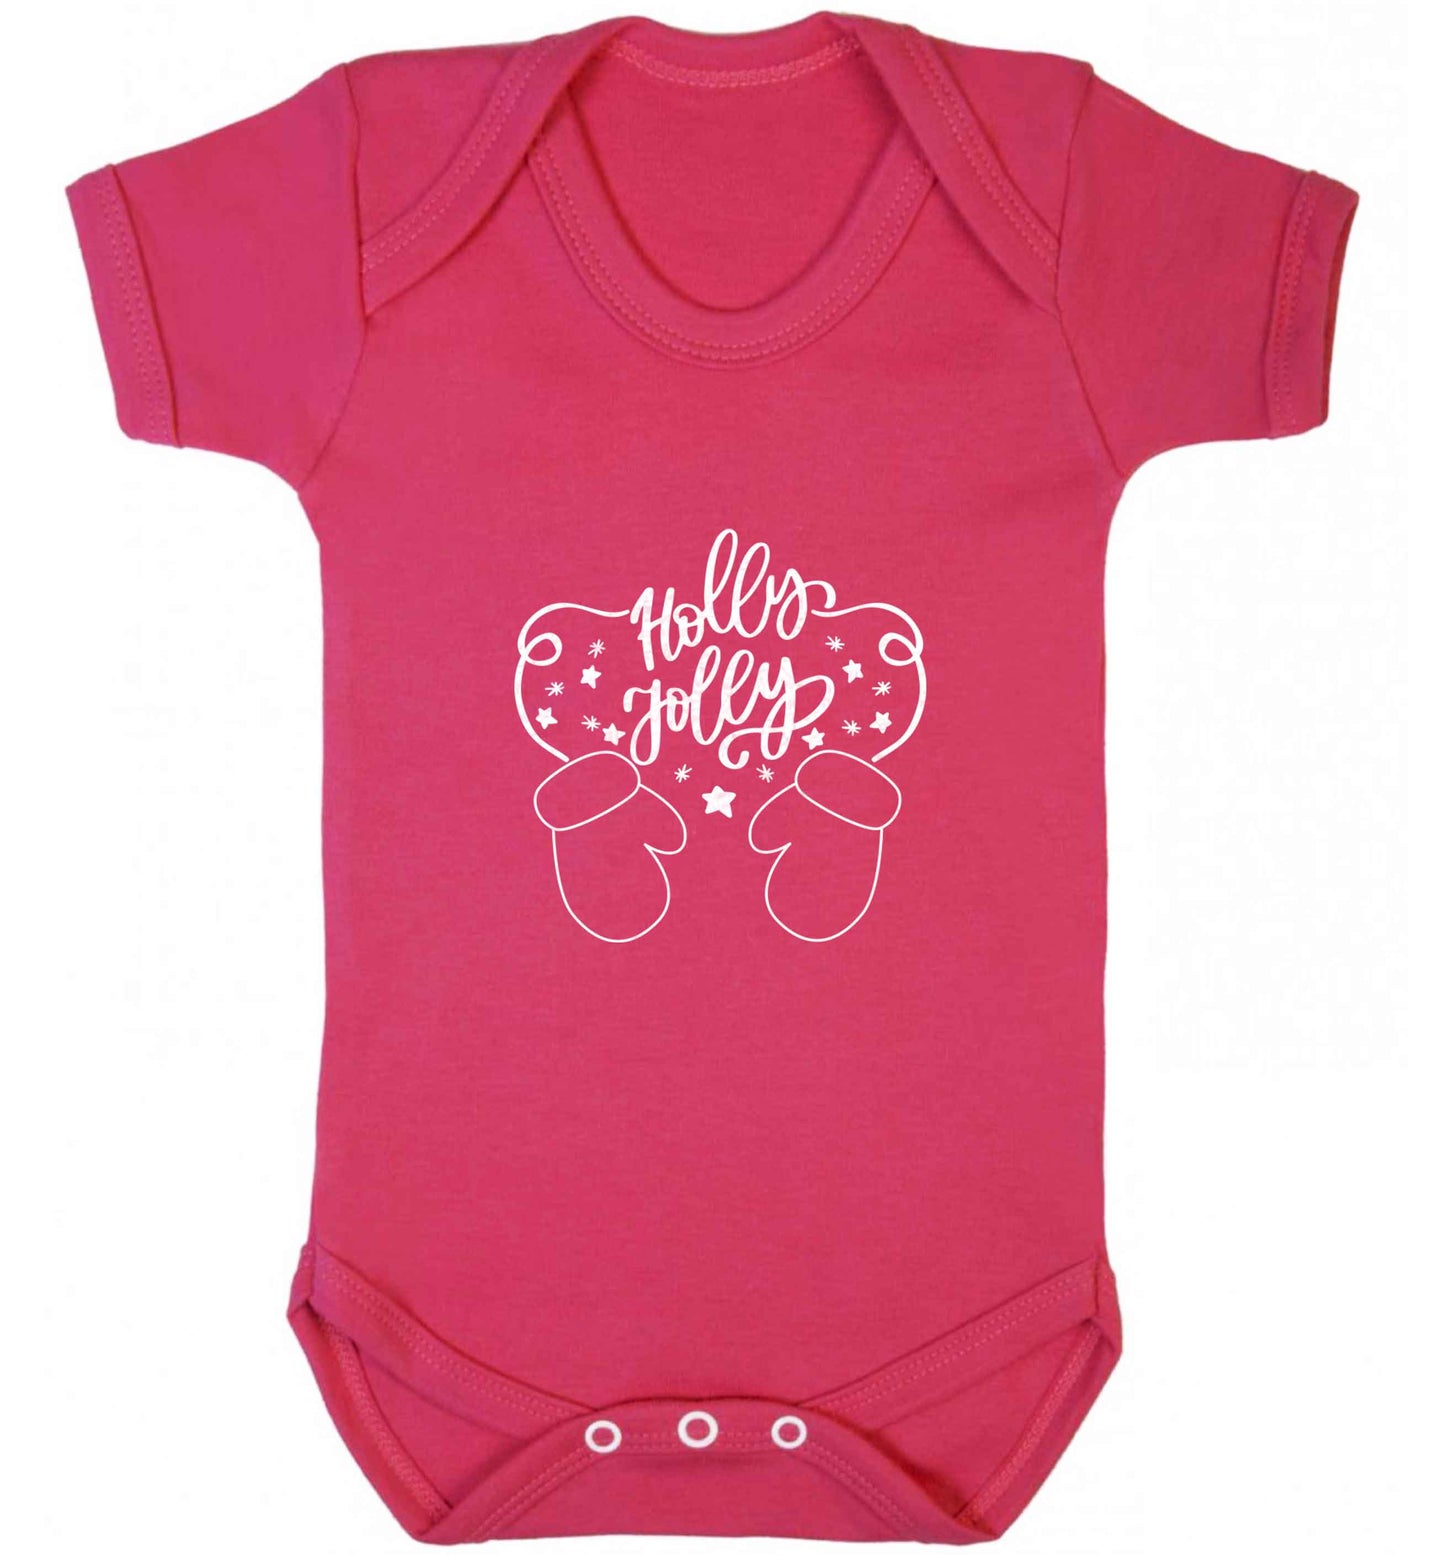 Holly jolly baby vest dark pink 18-24 months